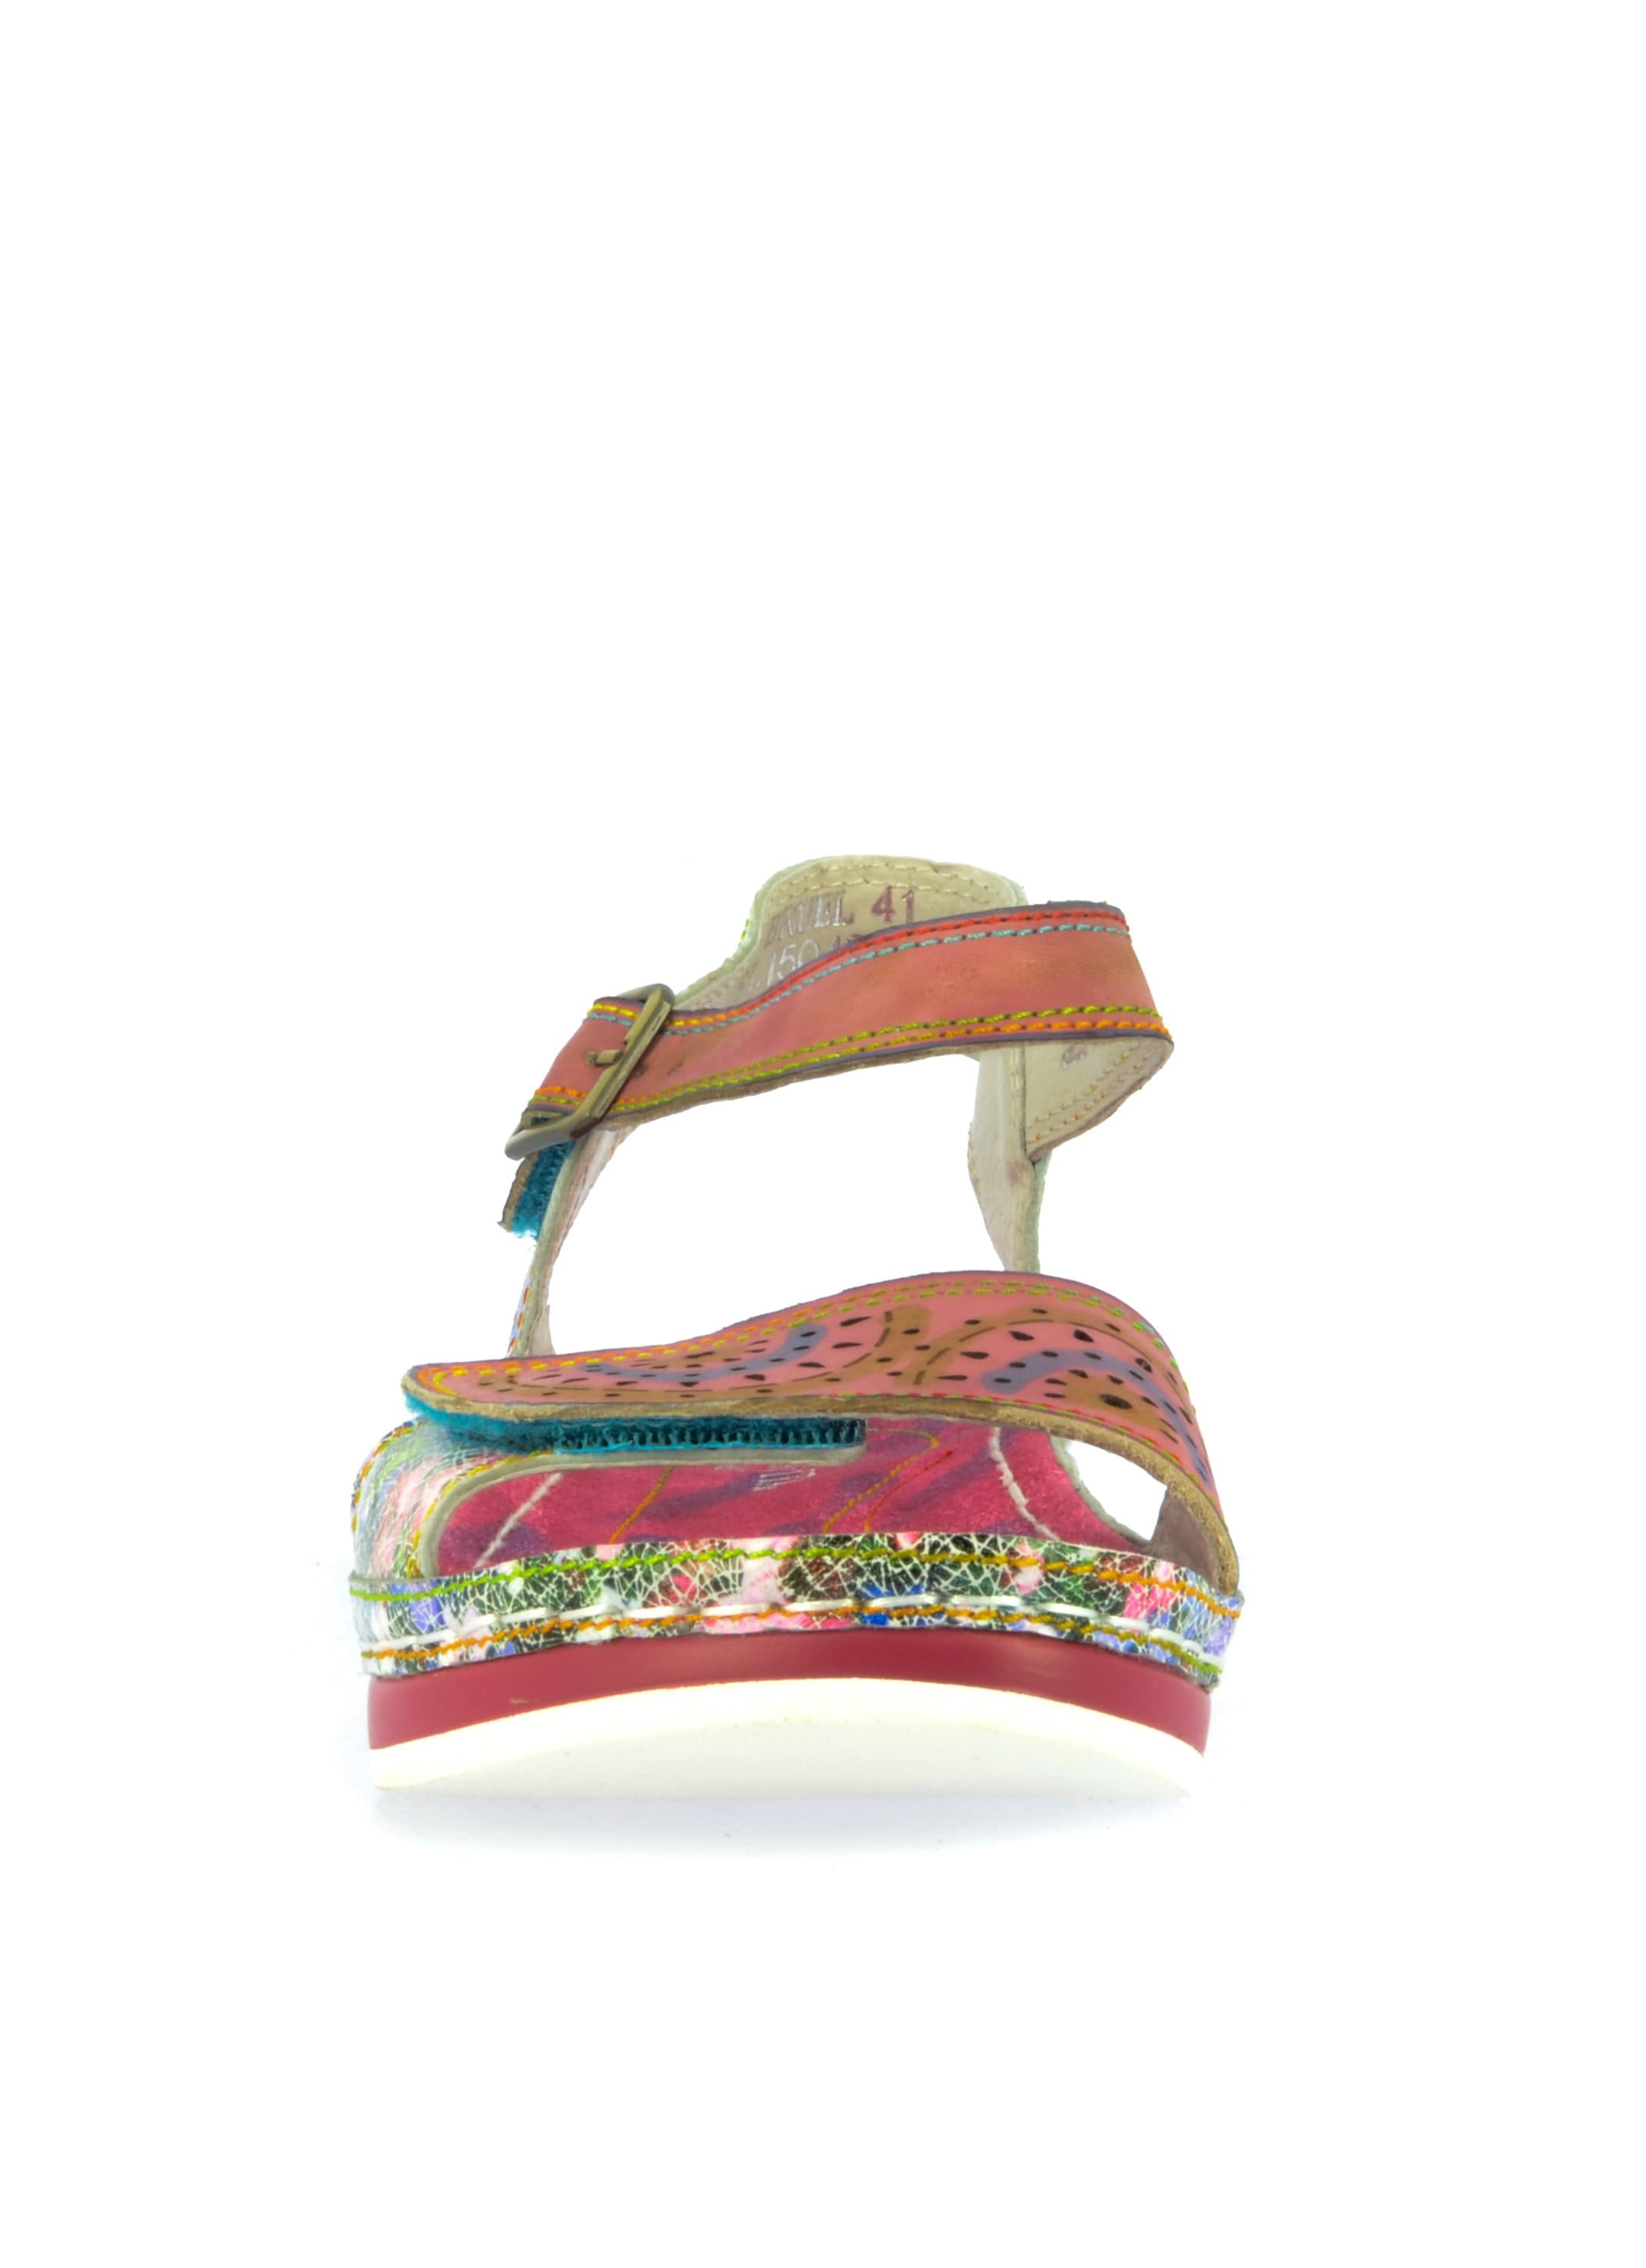 Shoe BRCUELO41 - Sandal